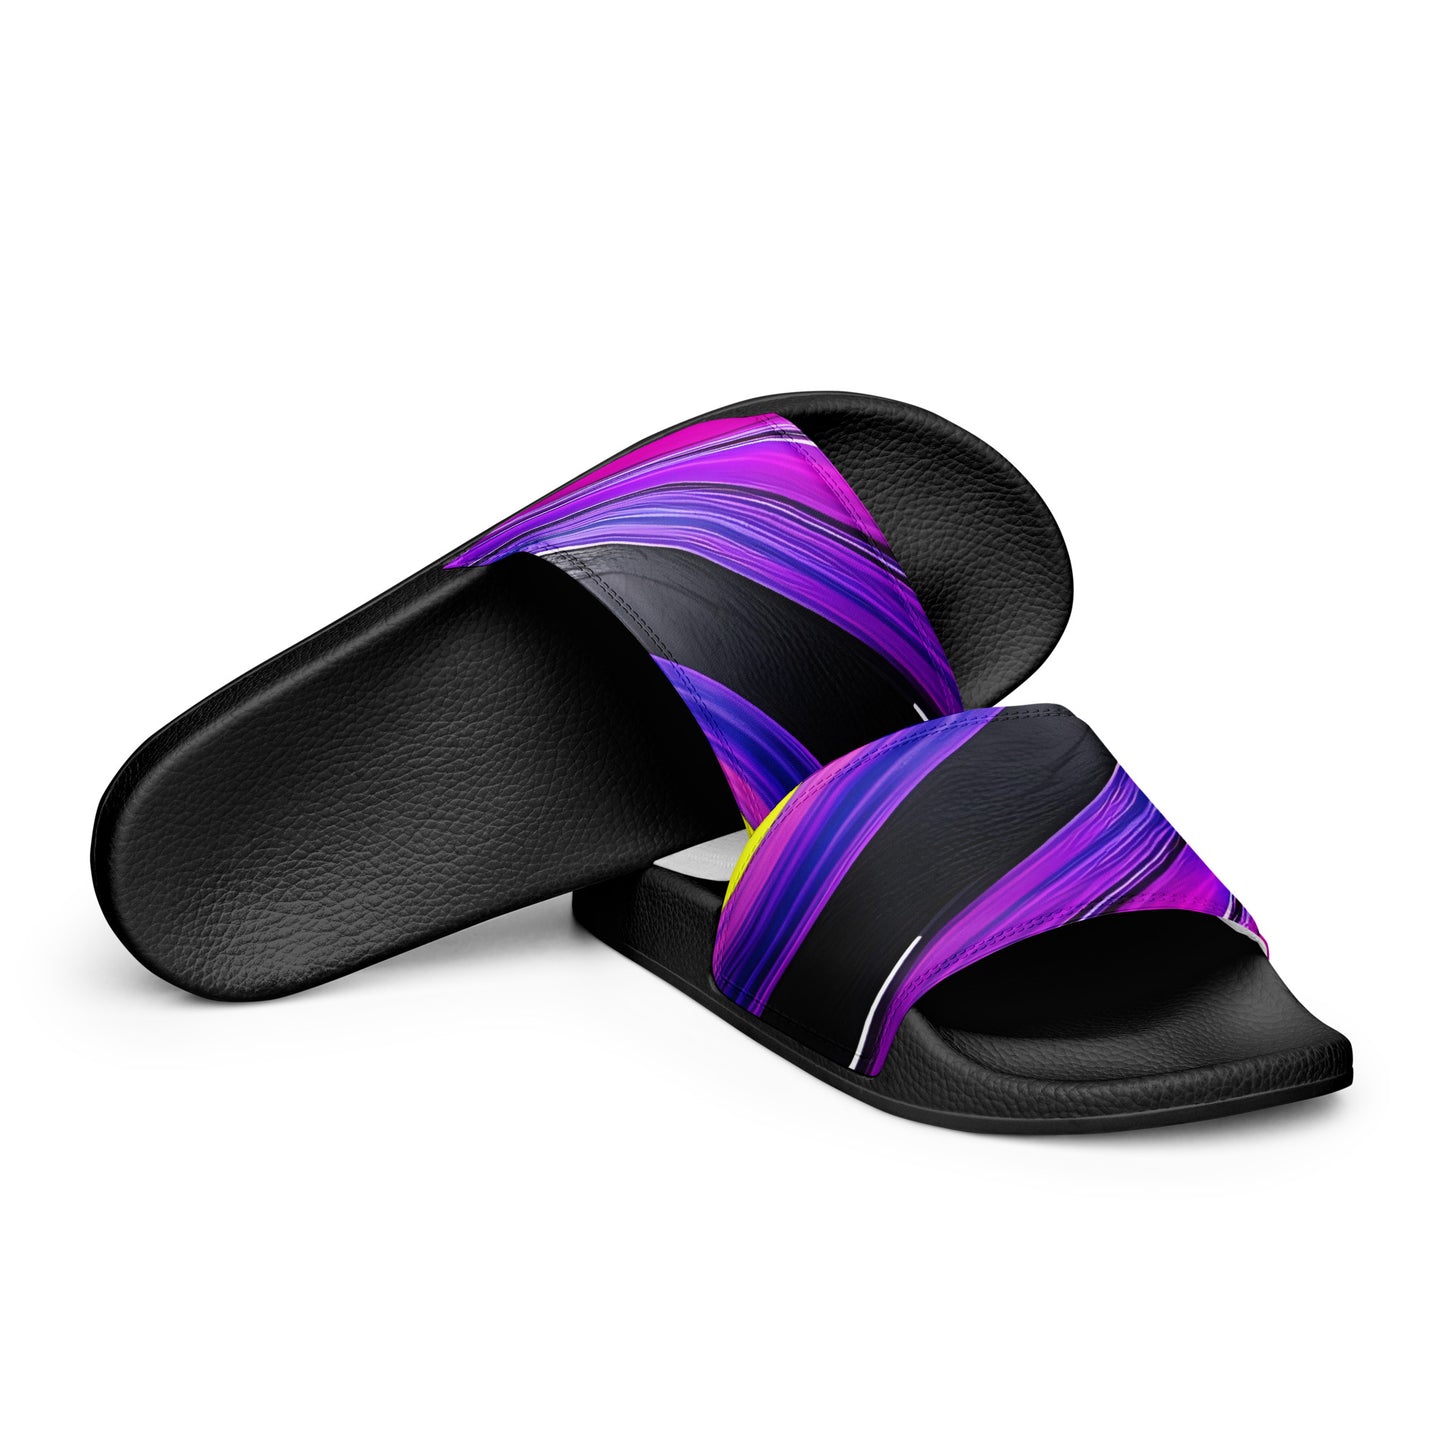 Women's slides - Purple Paint Pour Sandals Stylin' Spirit Black 5.5 